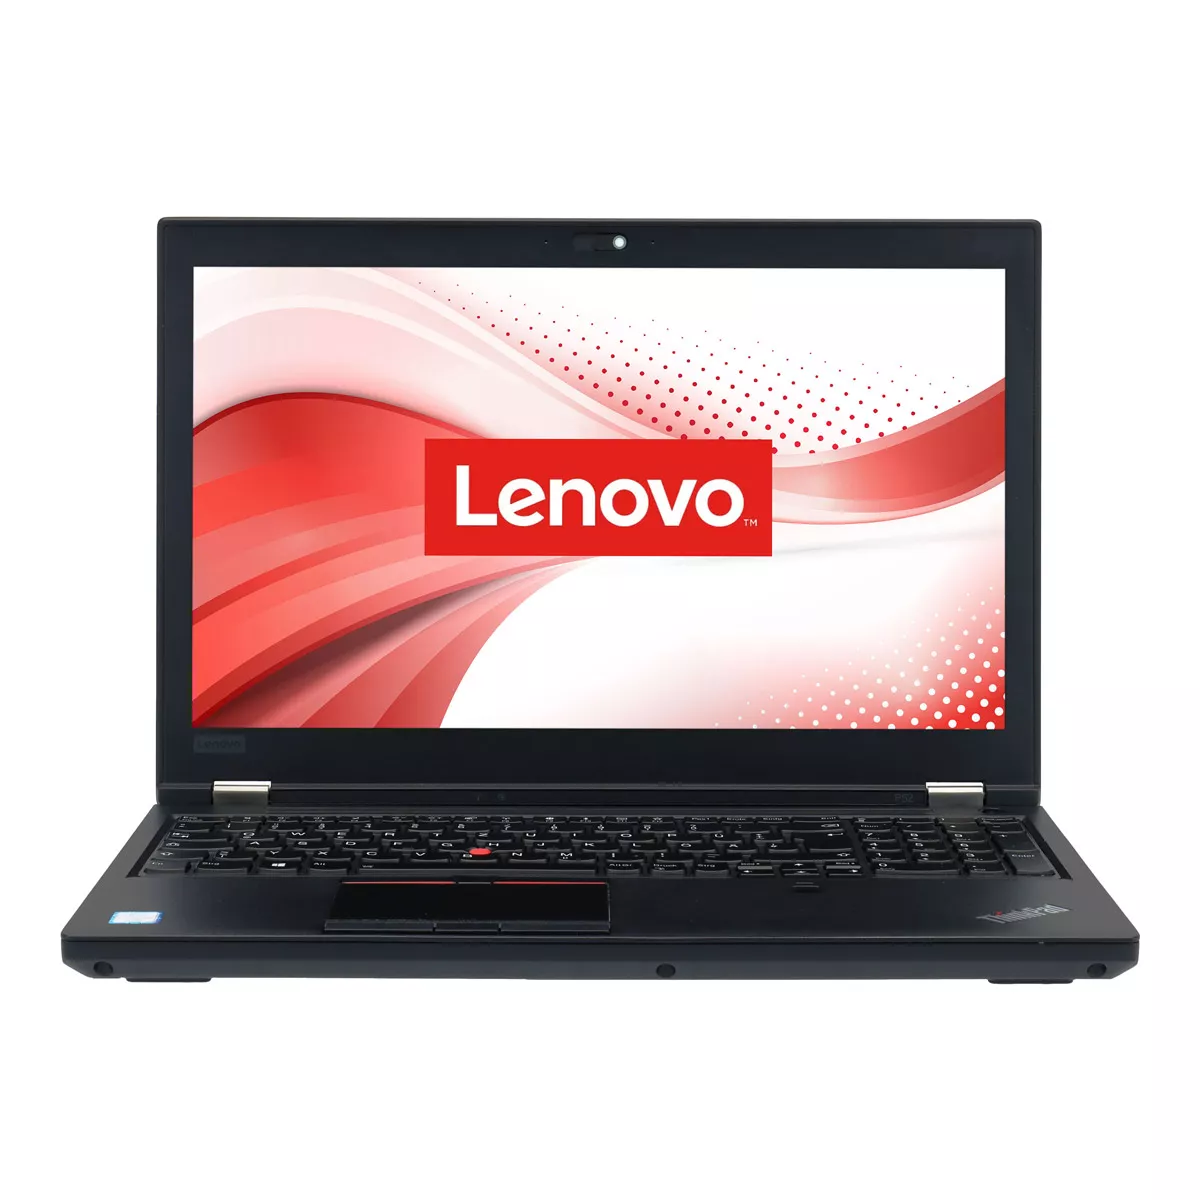 Lenovo ThinkPad P52 Core i7 8850H nVidia Quadro P3200M 32 GB 500 GB M.2 SSD Webcam B